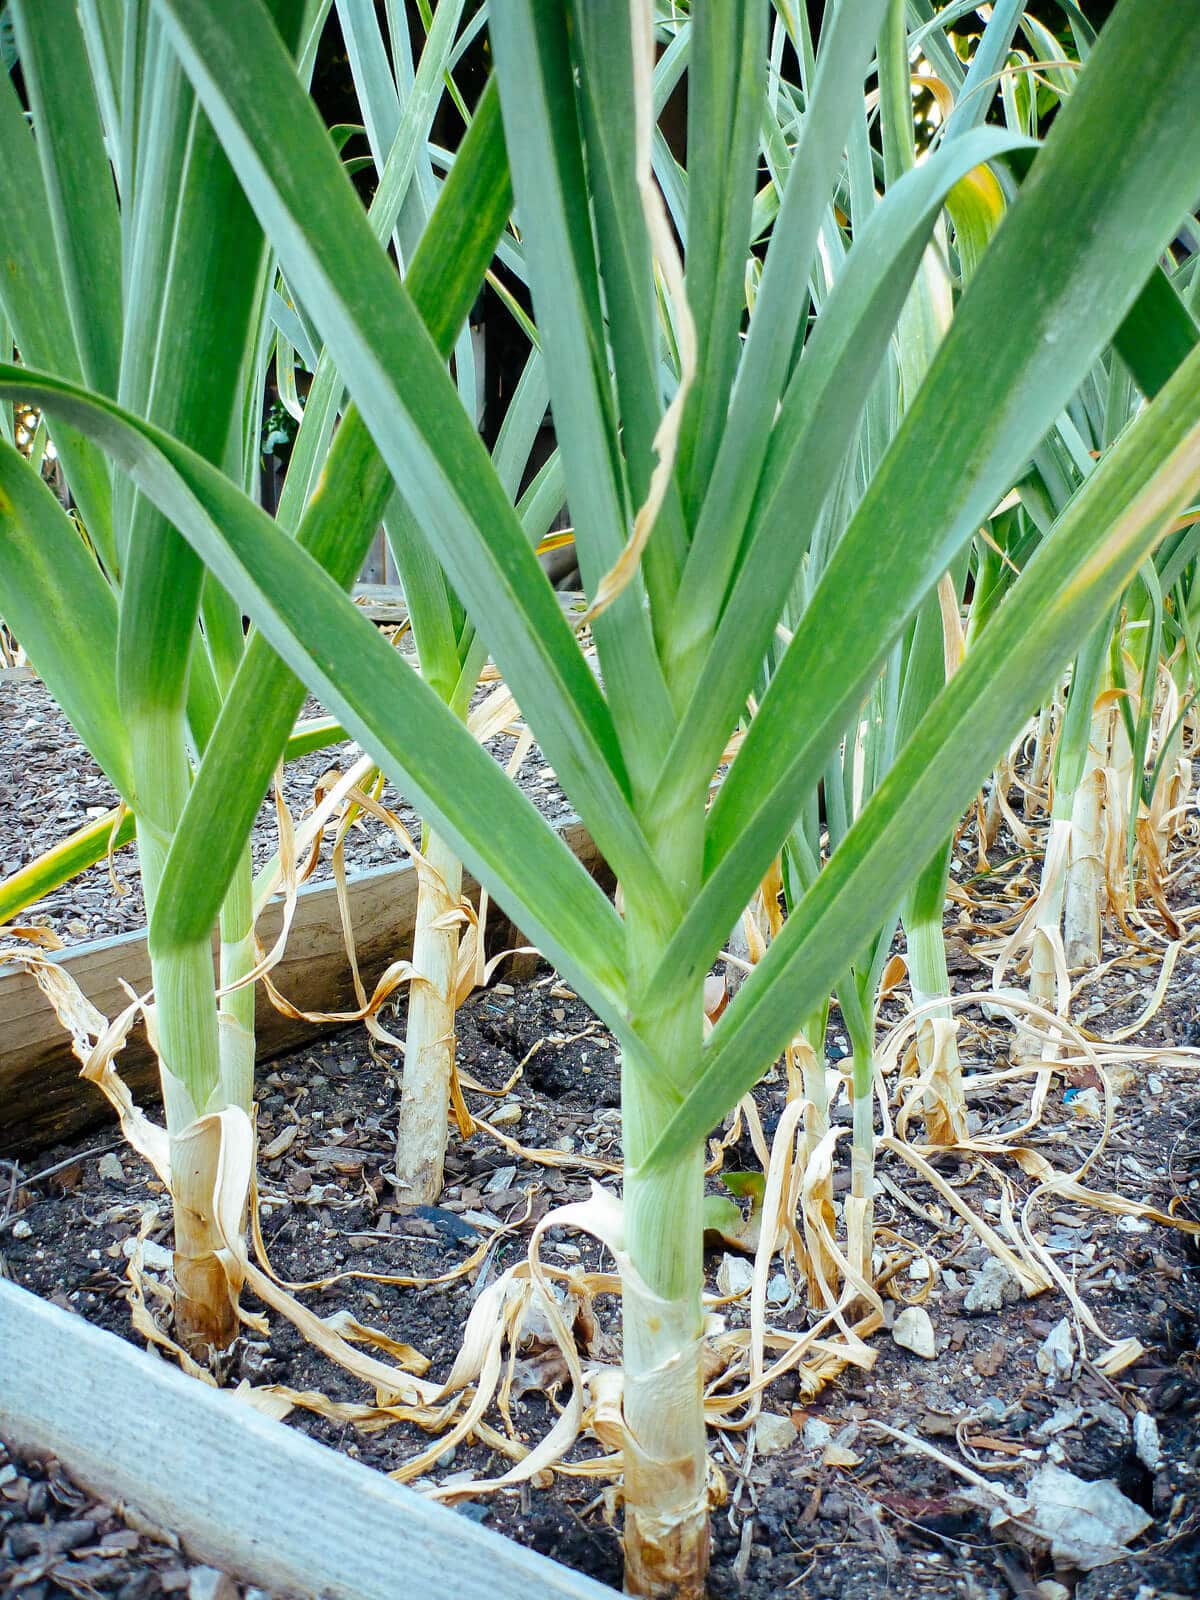 Garlic foliage